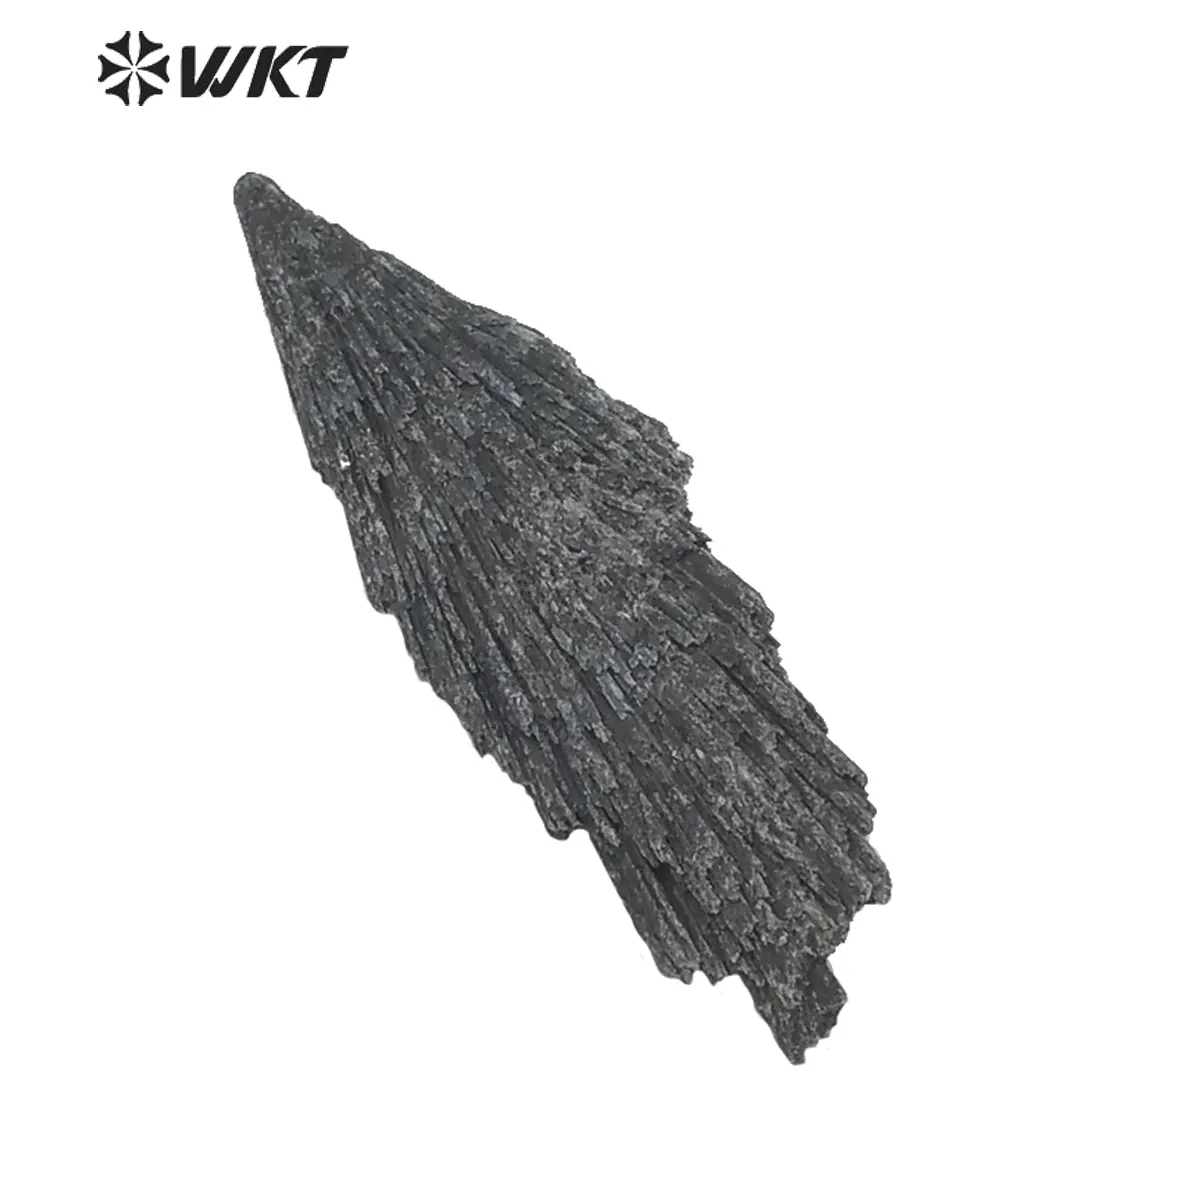 WT-G152, venta al por mayor, cristal de cianita negra, piedra Mineral de piedras preciosas Reiki Natural, piedra de cianita negra